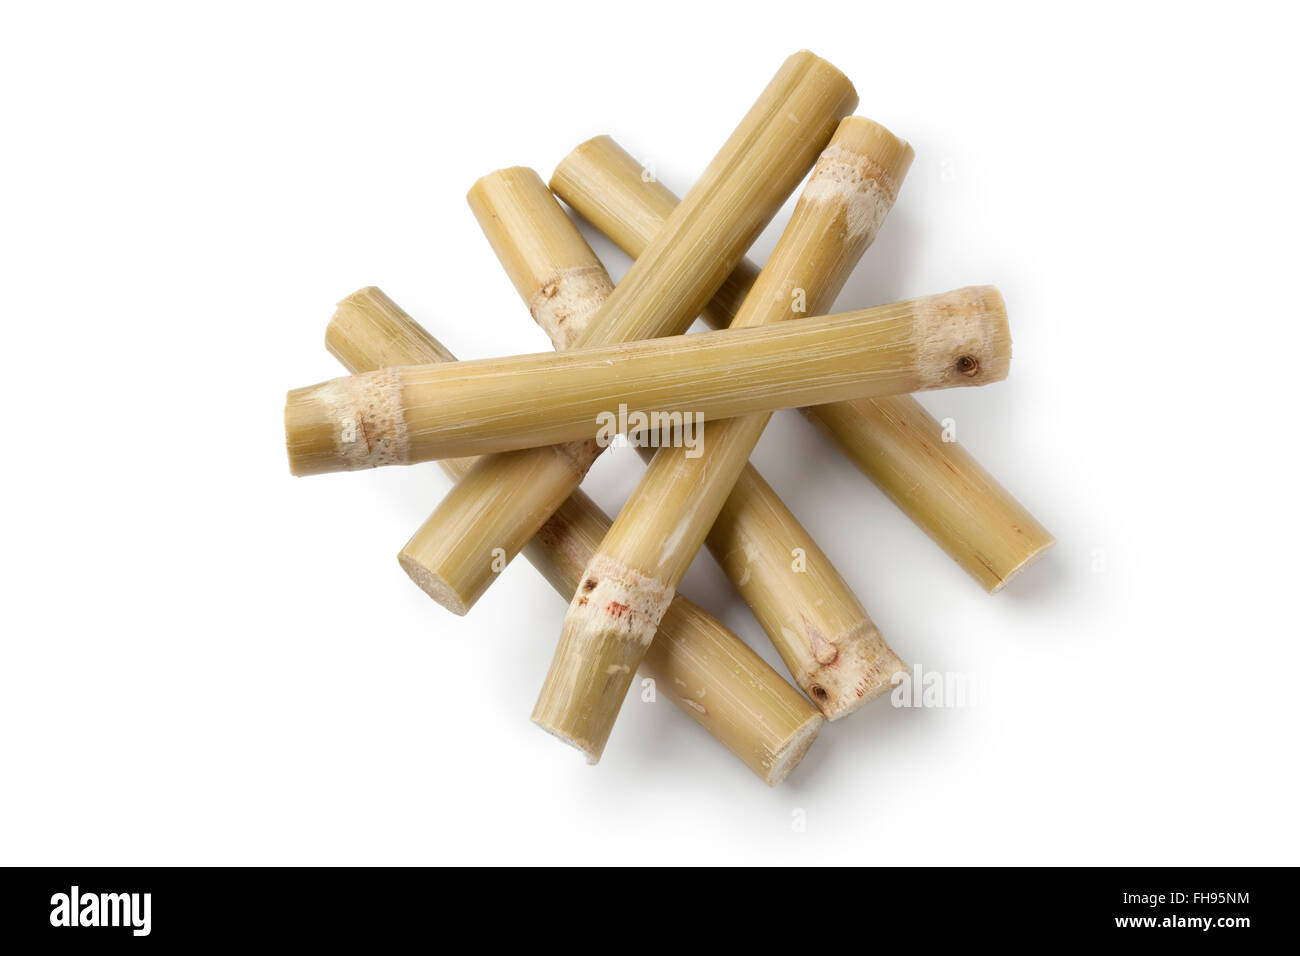 Des morceaux de bâtons de canne à sucre sur fond blanc Banque D'Images